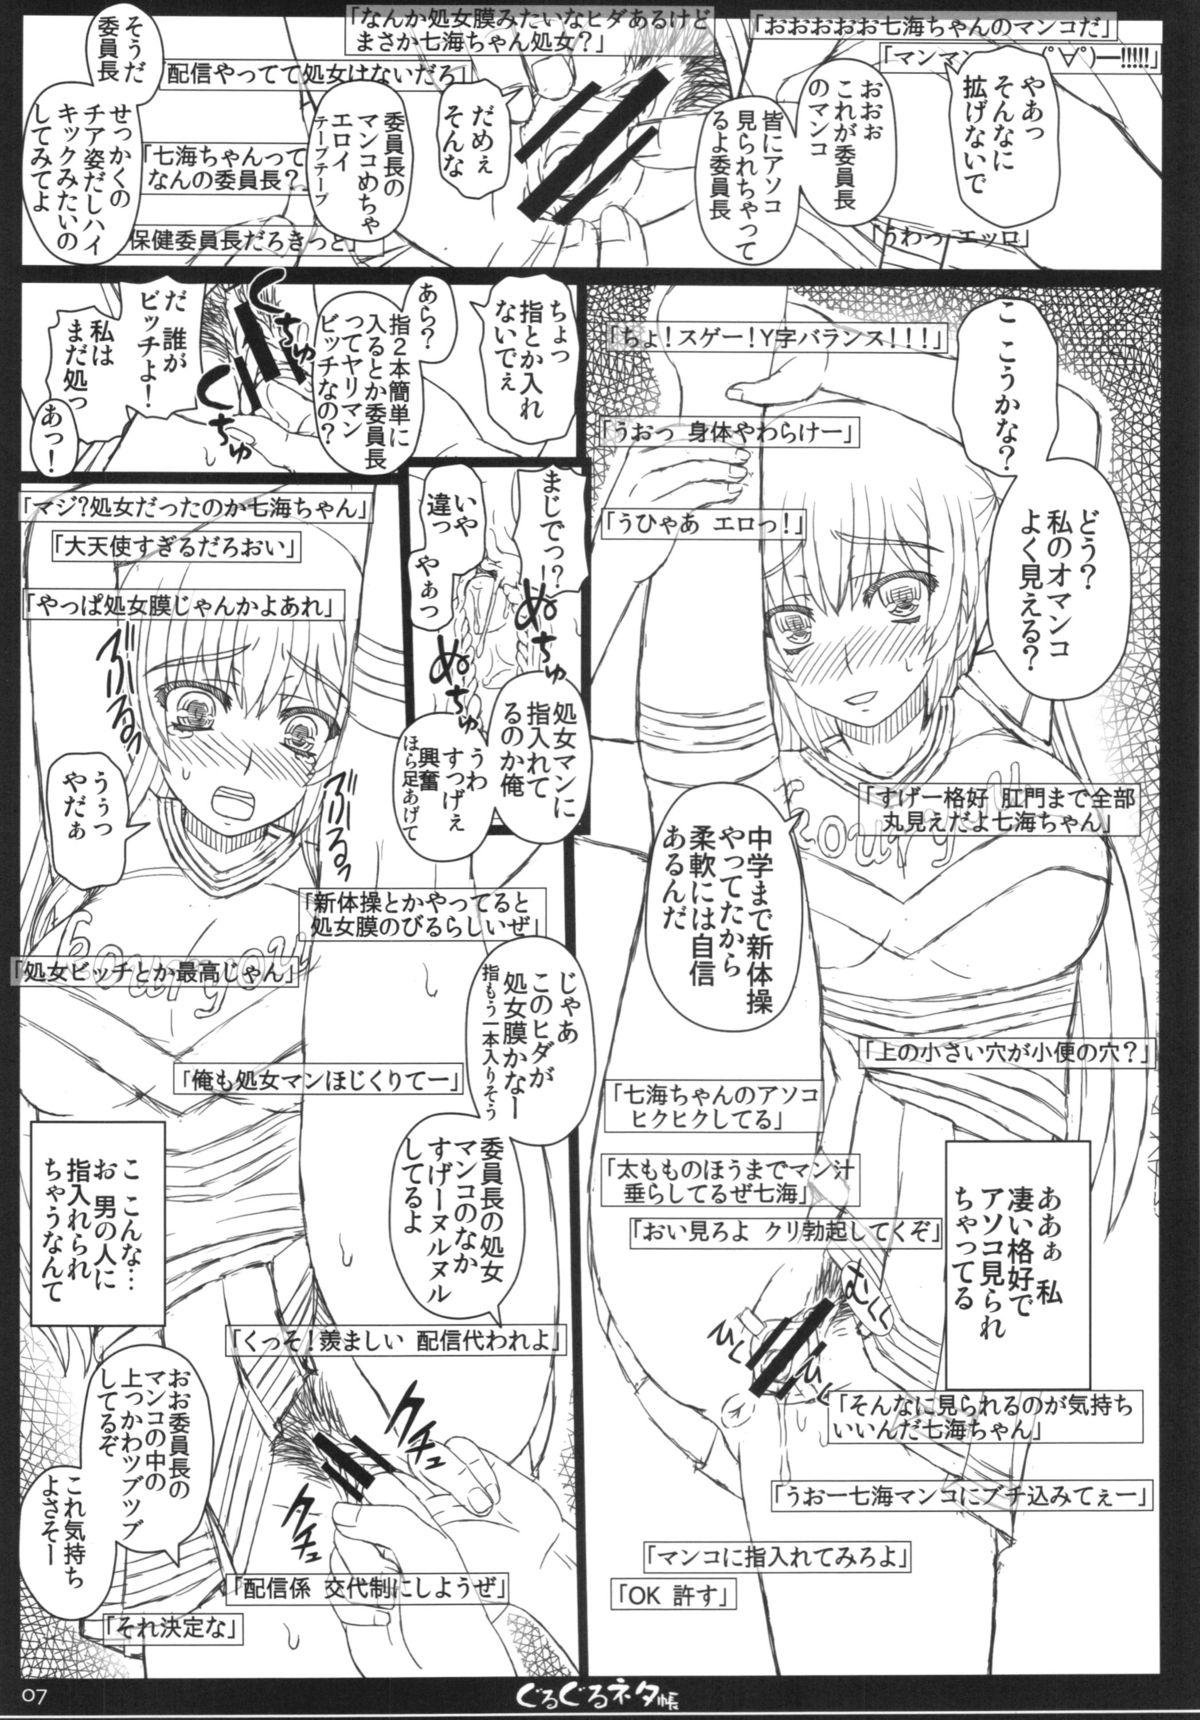 Punishment Shiawase no Katachi no Guruguru Netachou 84 Sloppy - Page 7